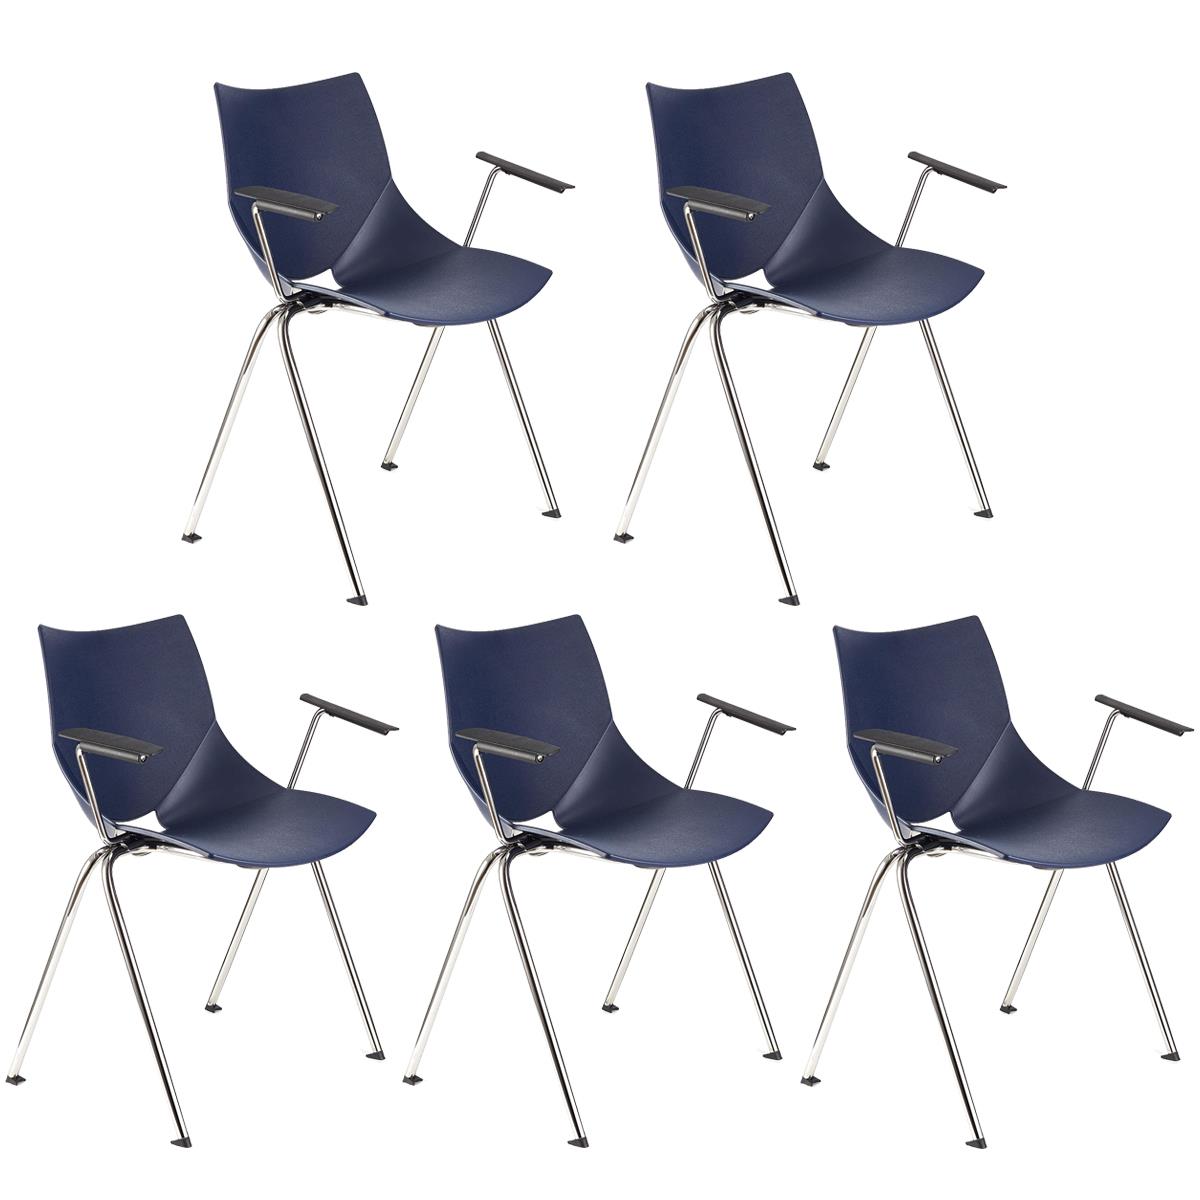 Lote 5 Cadeiras de Visita AMIR COM BRAÇOS, Confortável e Empilhável, Cor Azul